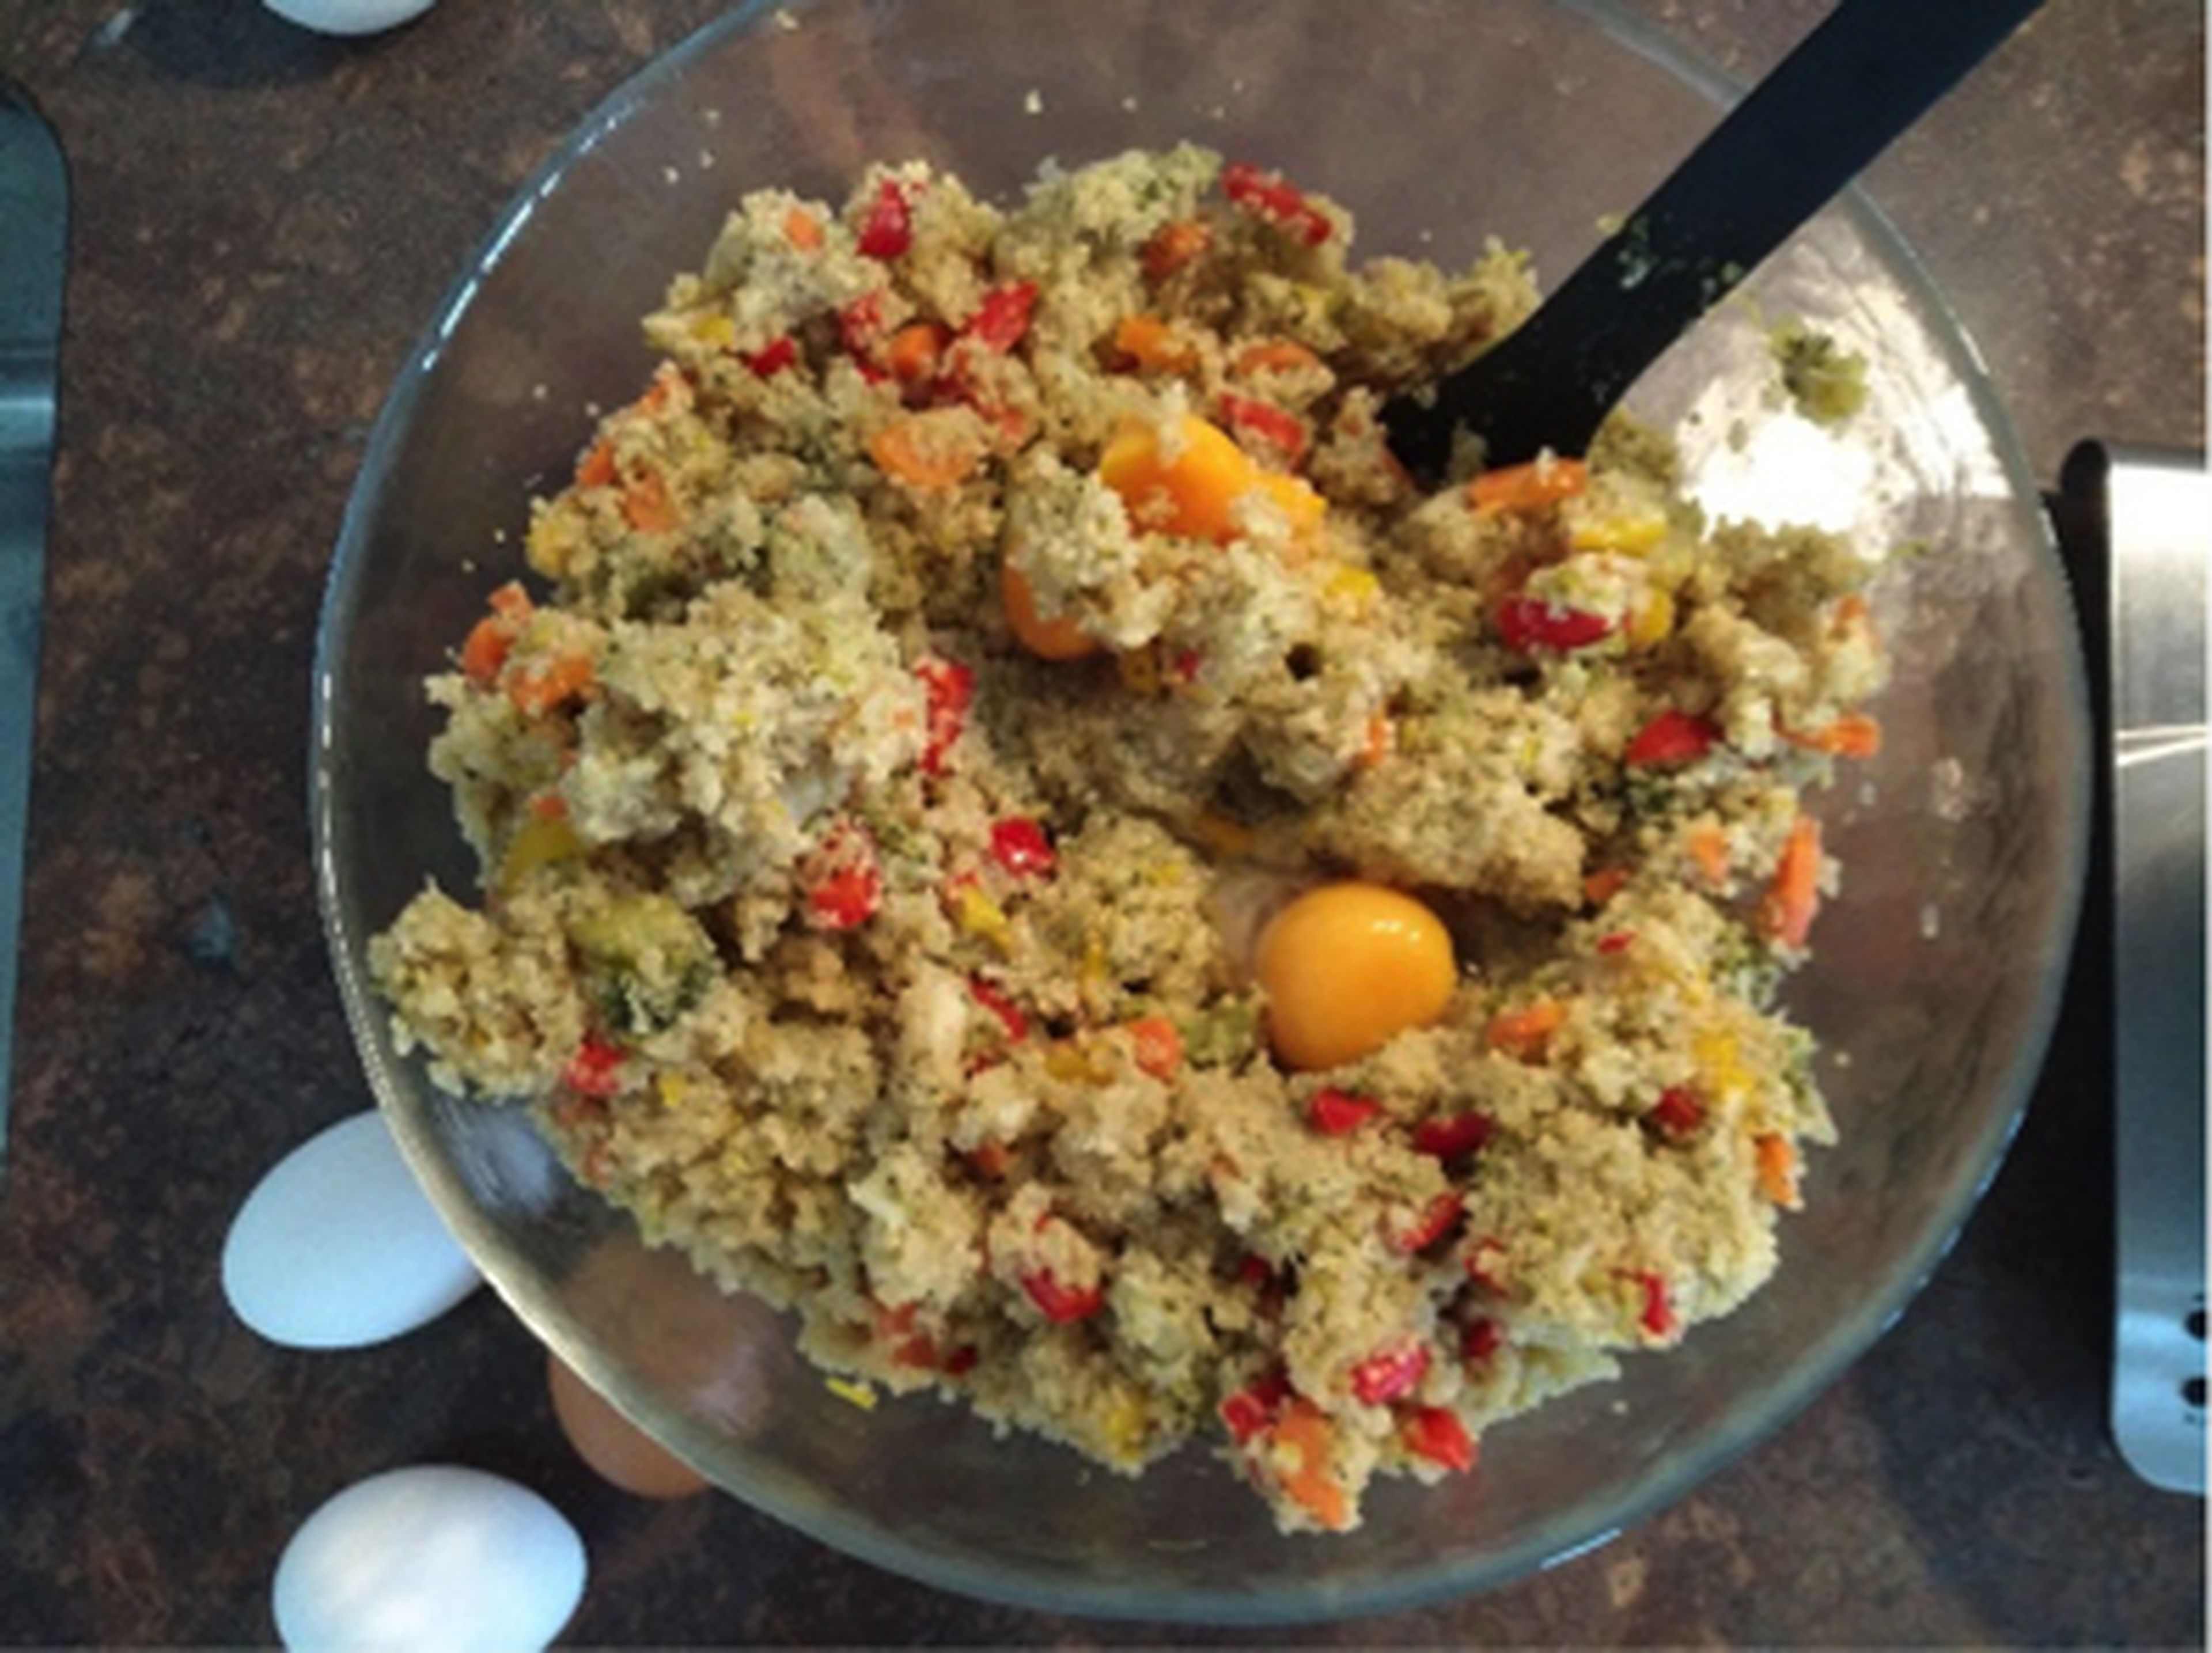 Backofen auf 200°C vorheizen. Eier und Paniermehl zur Quinoa-Gemüse-Mischung gebe und mit Salz und Pfeffer abschmecken. Alles gut zu einer einheitlichen Masse vermengen. Kleine Küchlein formen und auf ein mit Backpapier ausgelegtes Backblech legen.